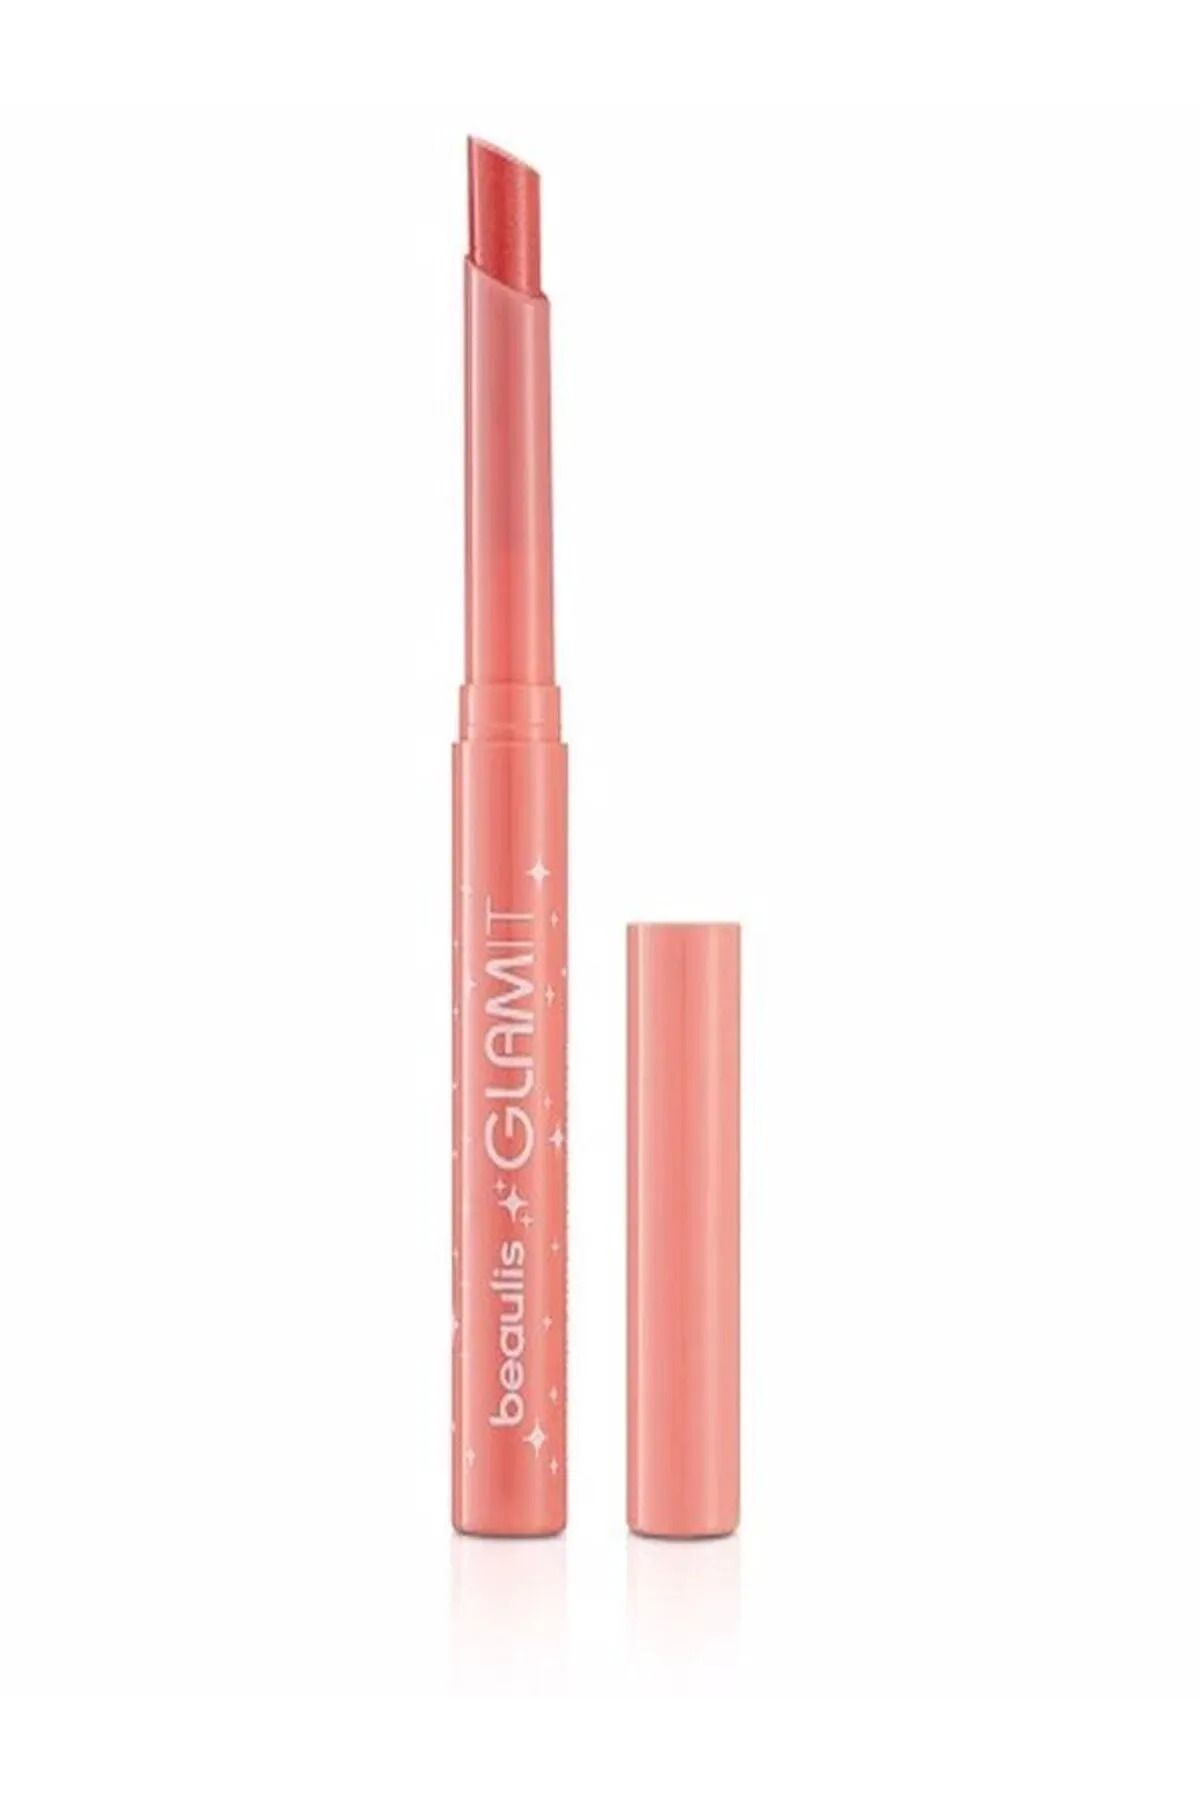 beaulis Glam It Işıltılı Lip Balm Ruj 516 Light Pink Dudak Balmı